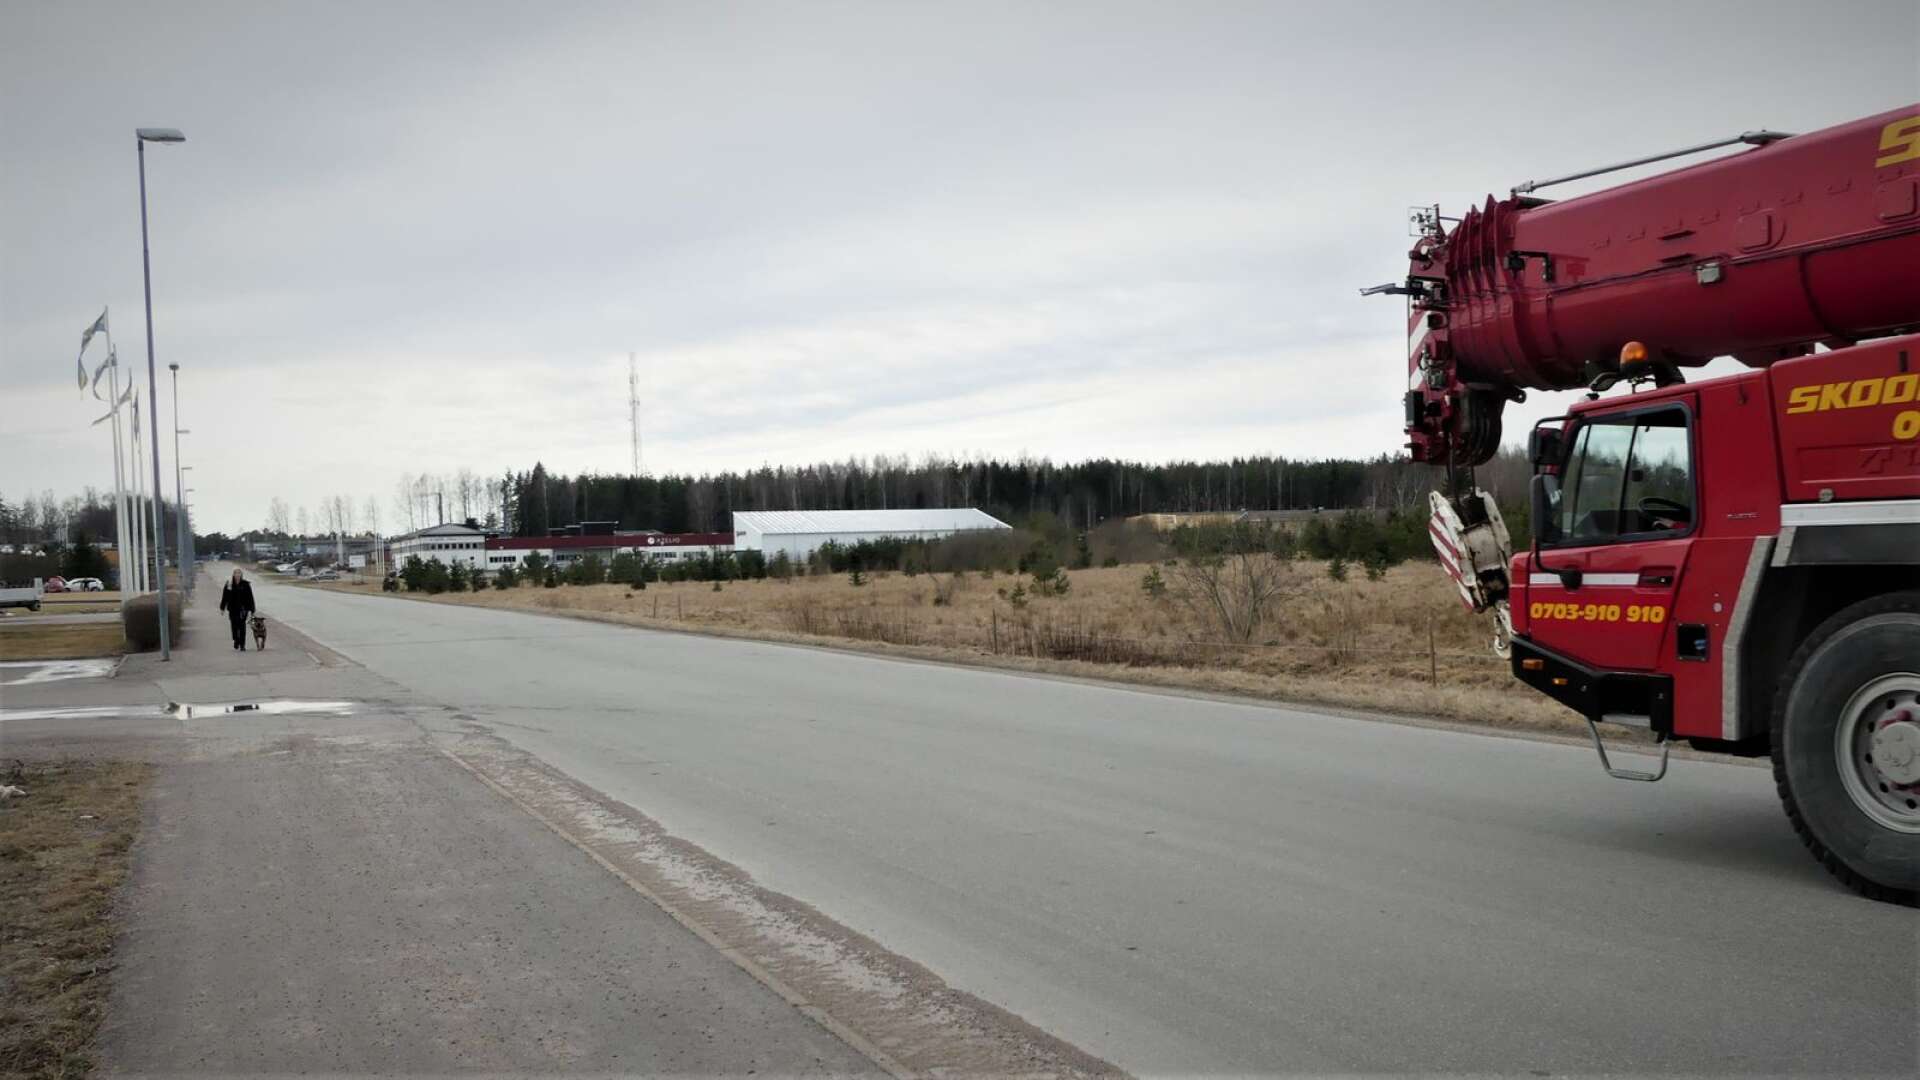 Obebyggd industrimark invid Forsbrogatan i Åmål ligger ute till försäljning.